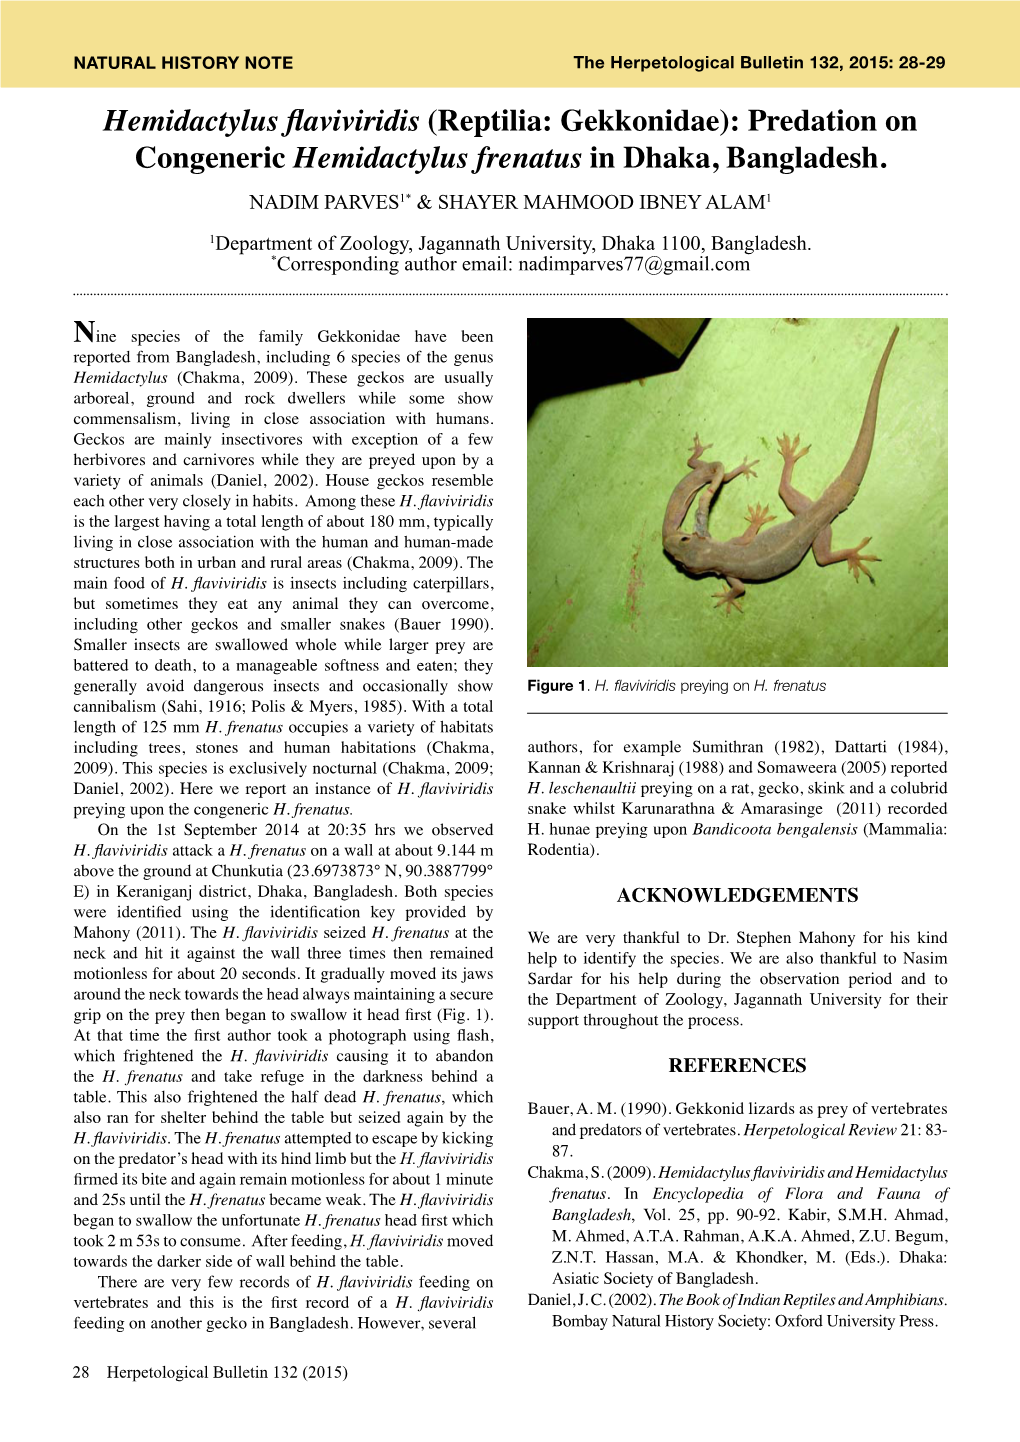 Hemidactylus Flaviviridis (Reptilia: Gekkonidae): Predation on Congeneric Hemidactylus Frenatus in Dhaka, Bangladesh